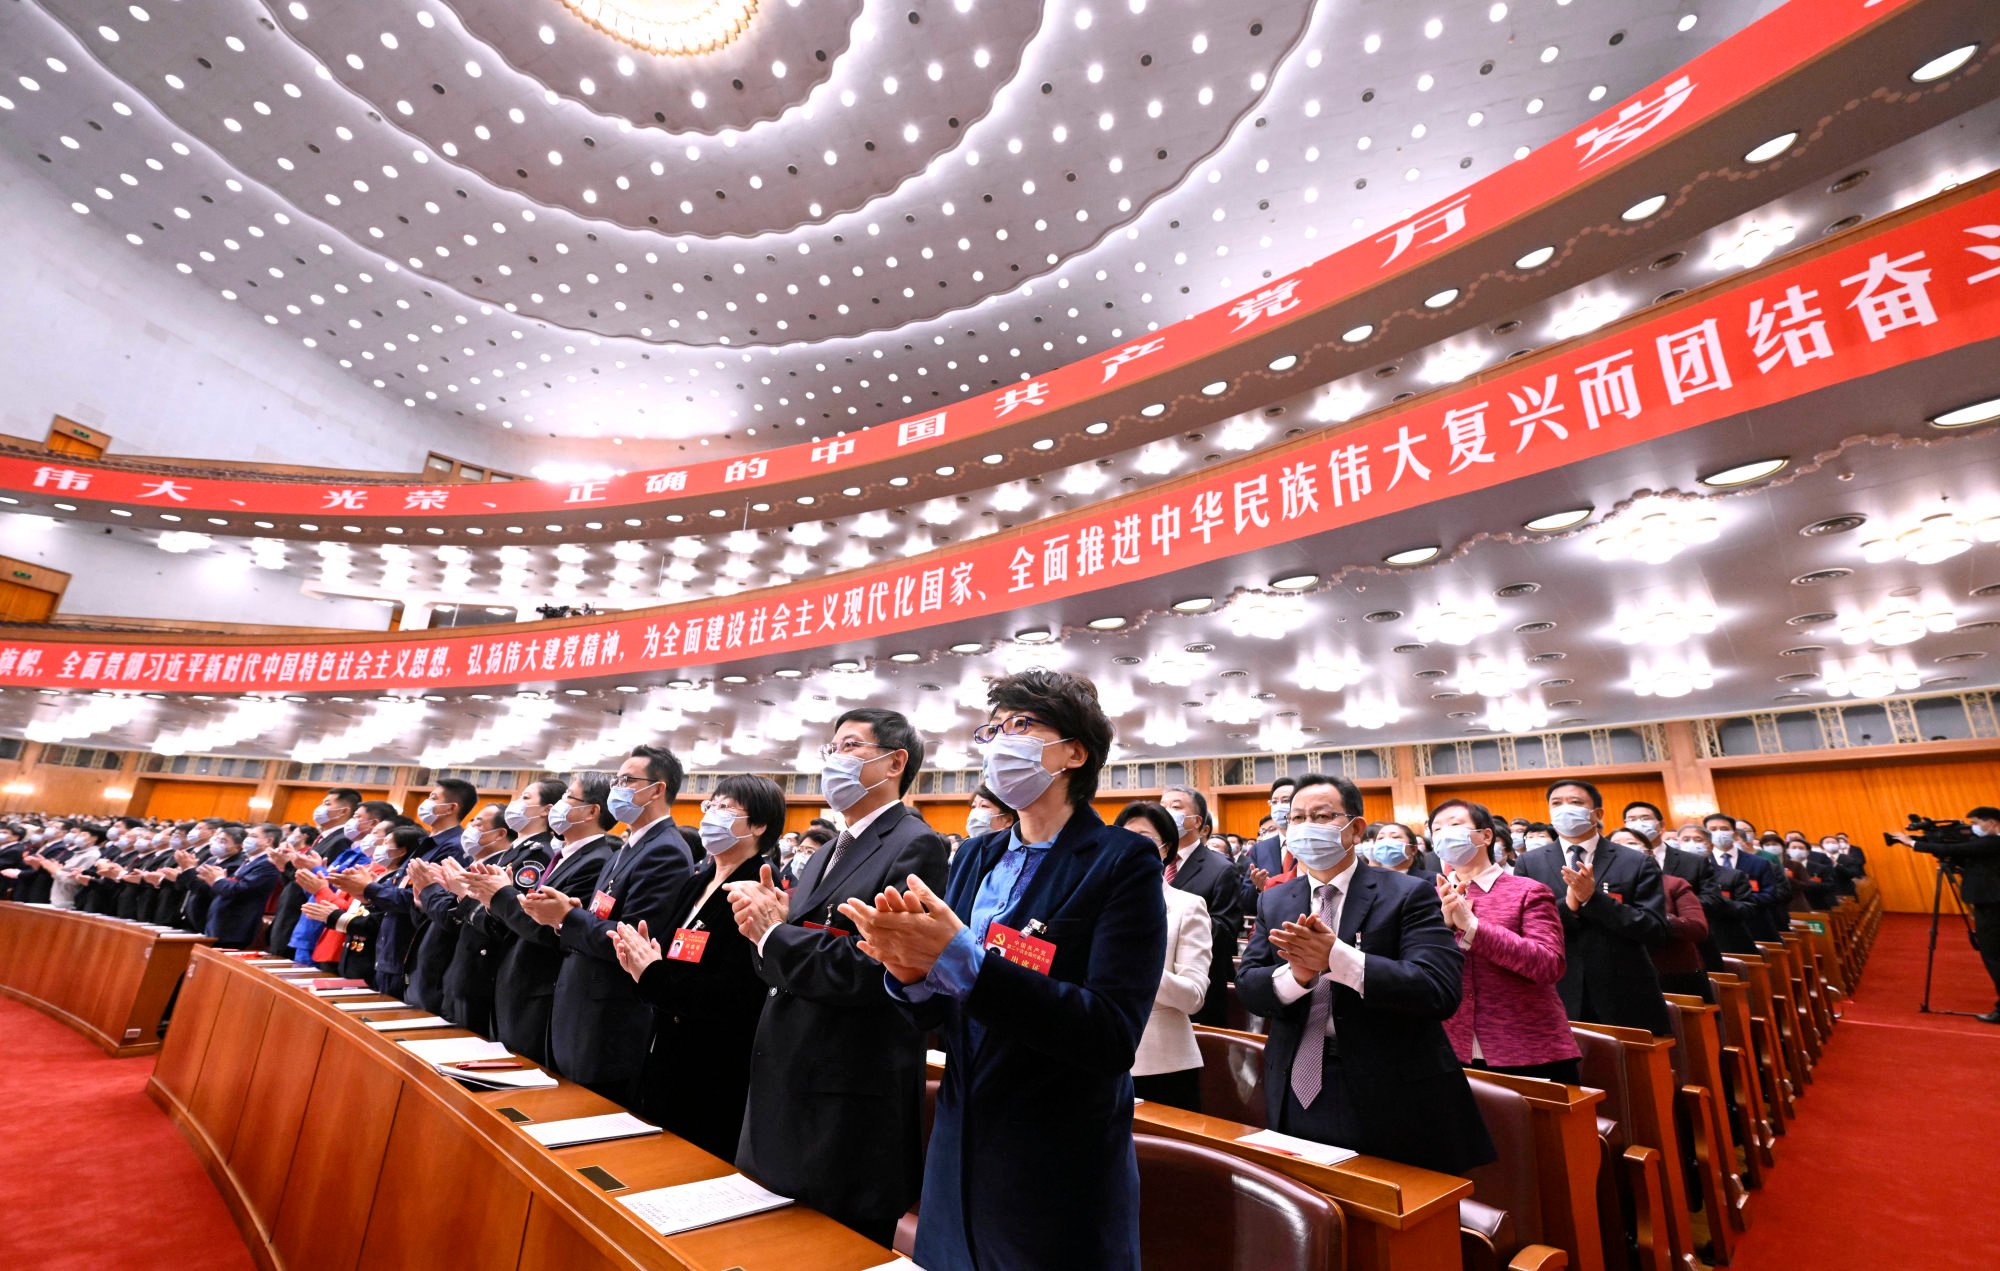 Les délégués assistent à la séance de clôture du congrès national du Parti communiste à Pékin le 22 octobre. Photo : Xinhua